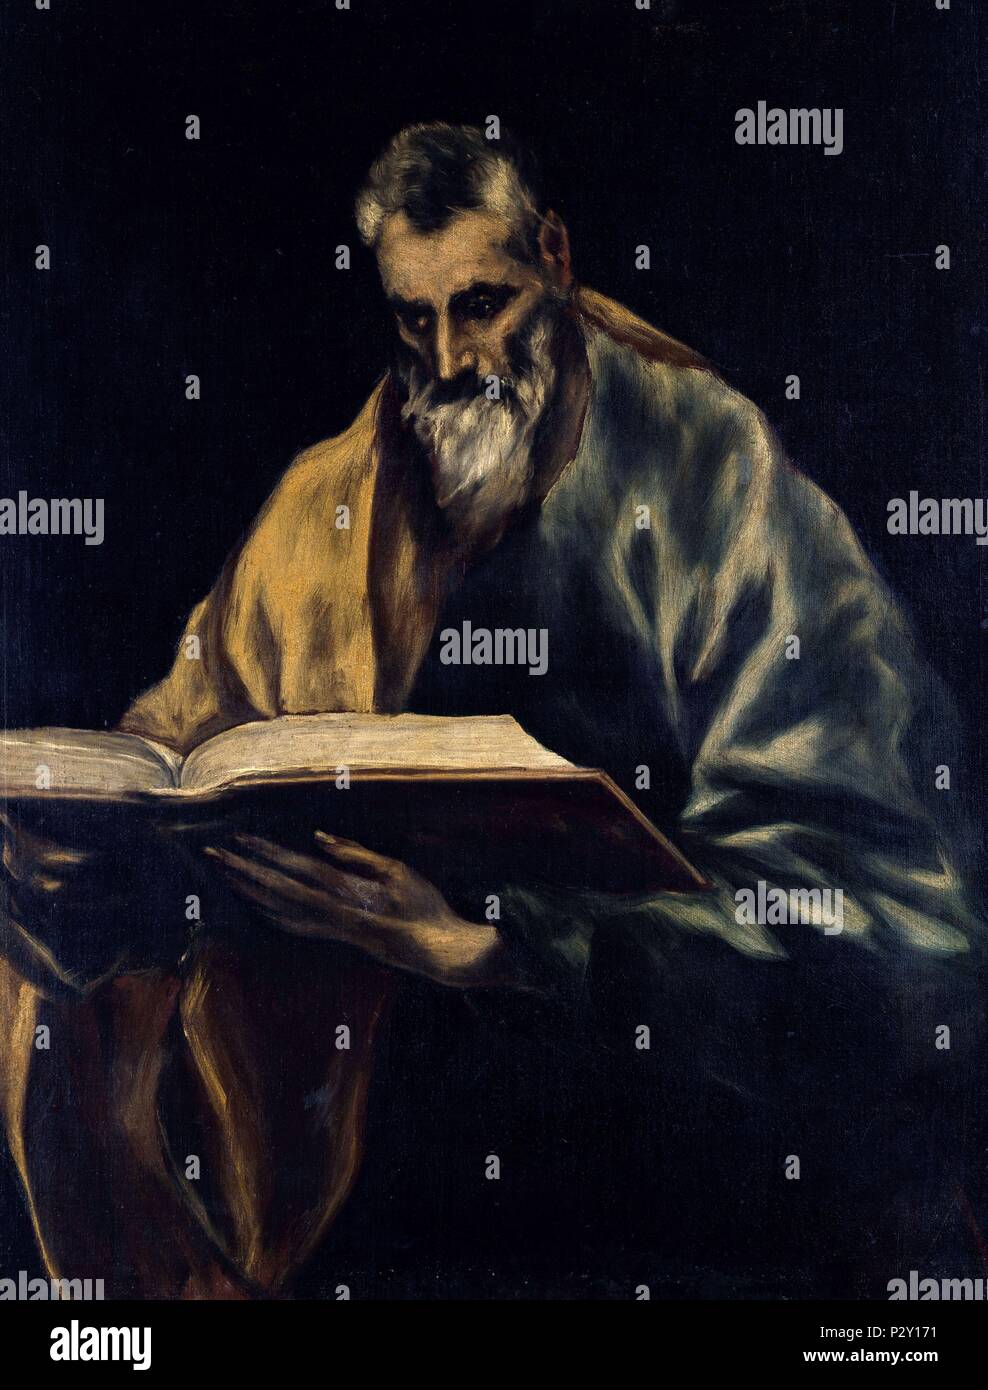 SAN SIMON - SIGLO XVI/XVII - MANIERISMO ESPAÑOL. Author: El Greco (1541-1614). Location: CASA MUSEO DEL GRECO-COLECCION, TOLEDO, SPAIN. Stock Photo